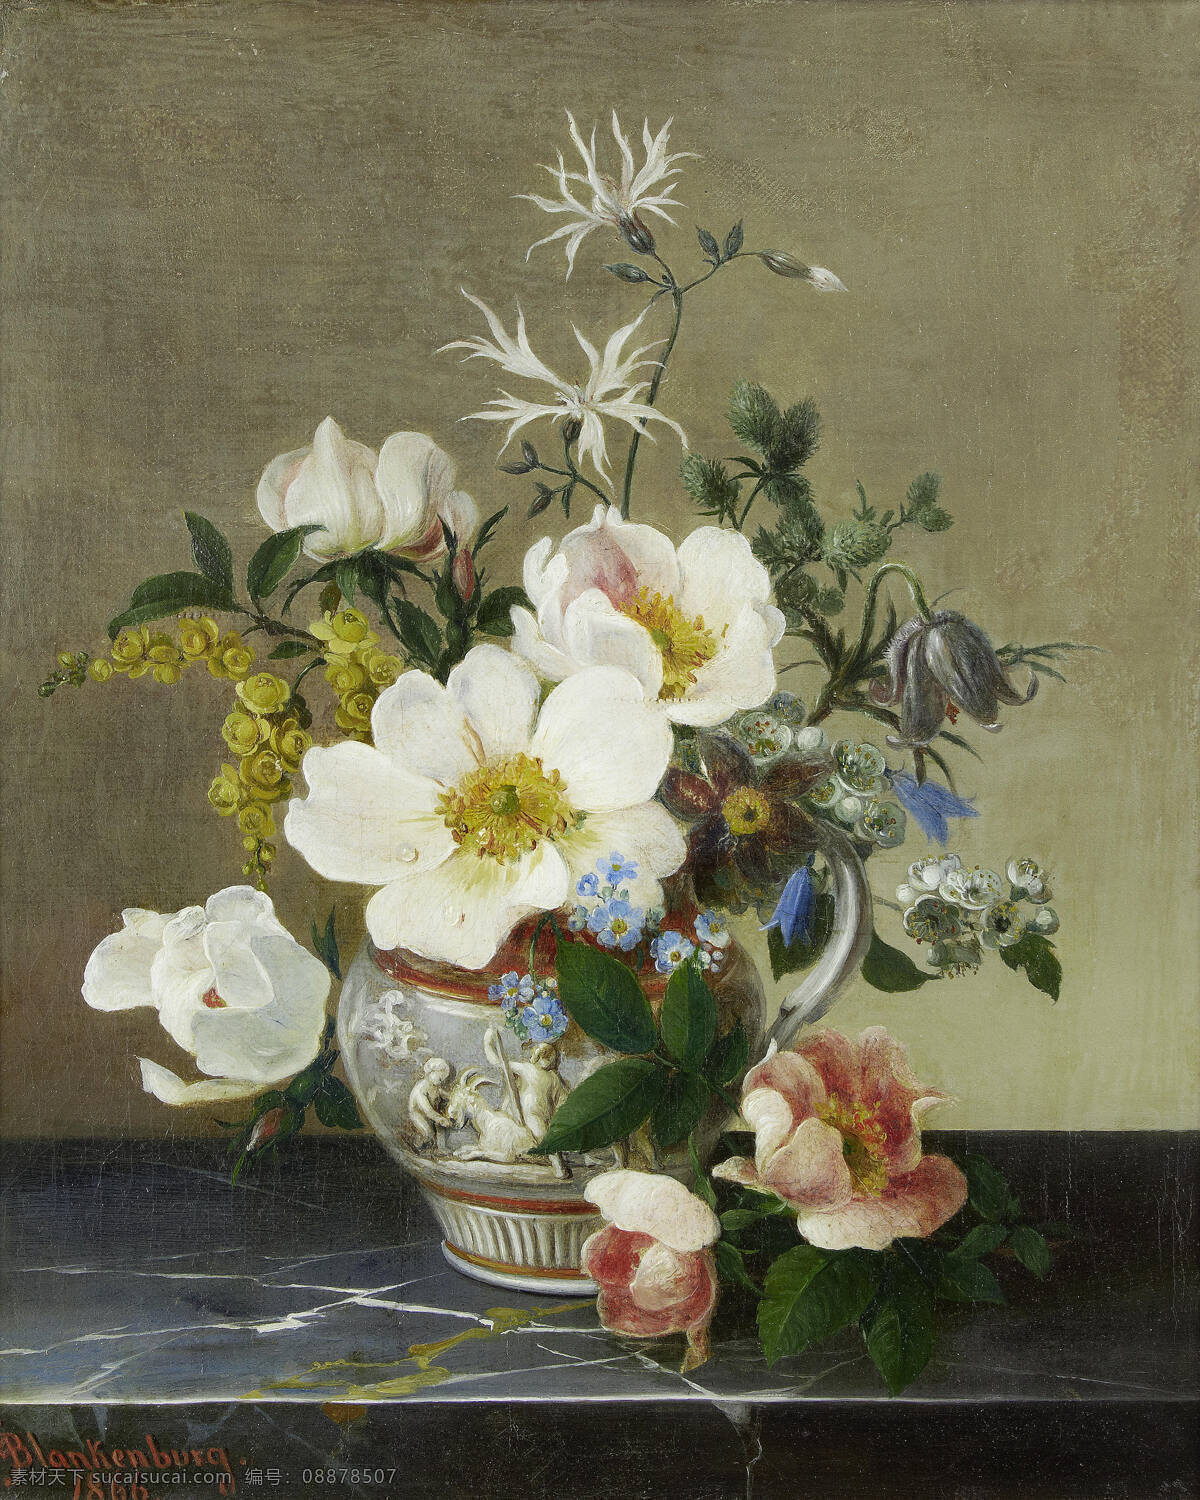 静物鲜花 混搭鲜花 永恒之美 大理石台子 白色理纹 19世纪油画 油画 绘画书法 文化艺术